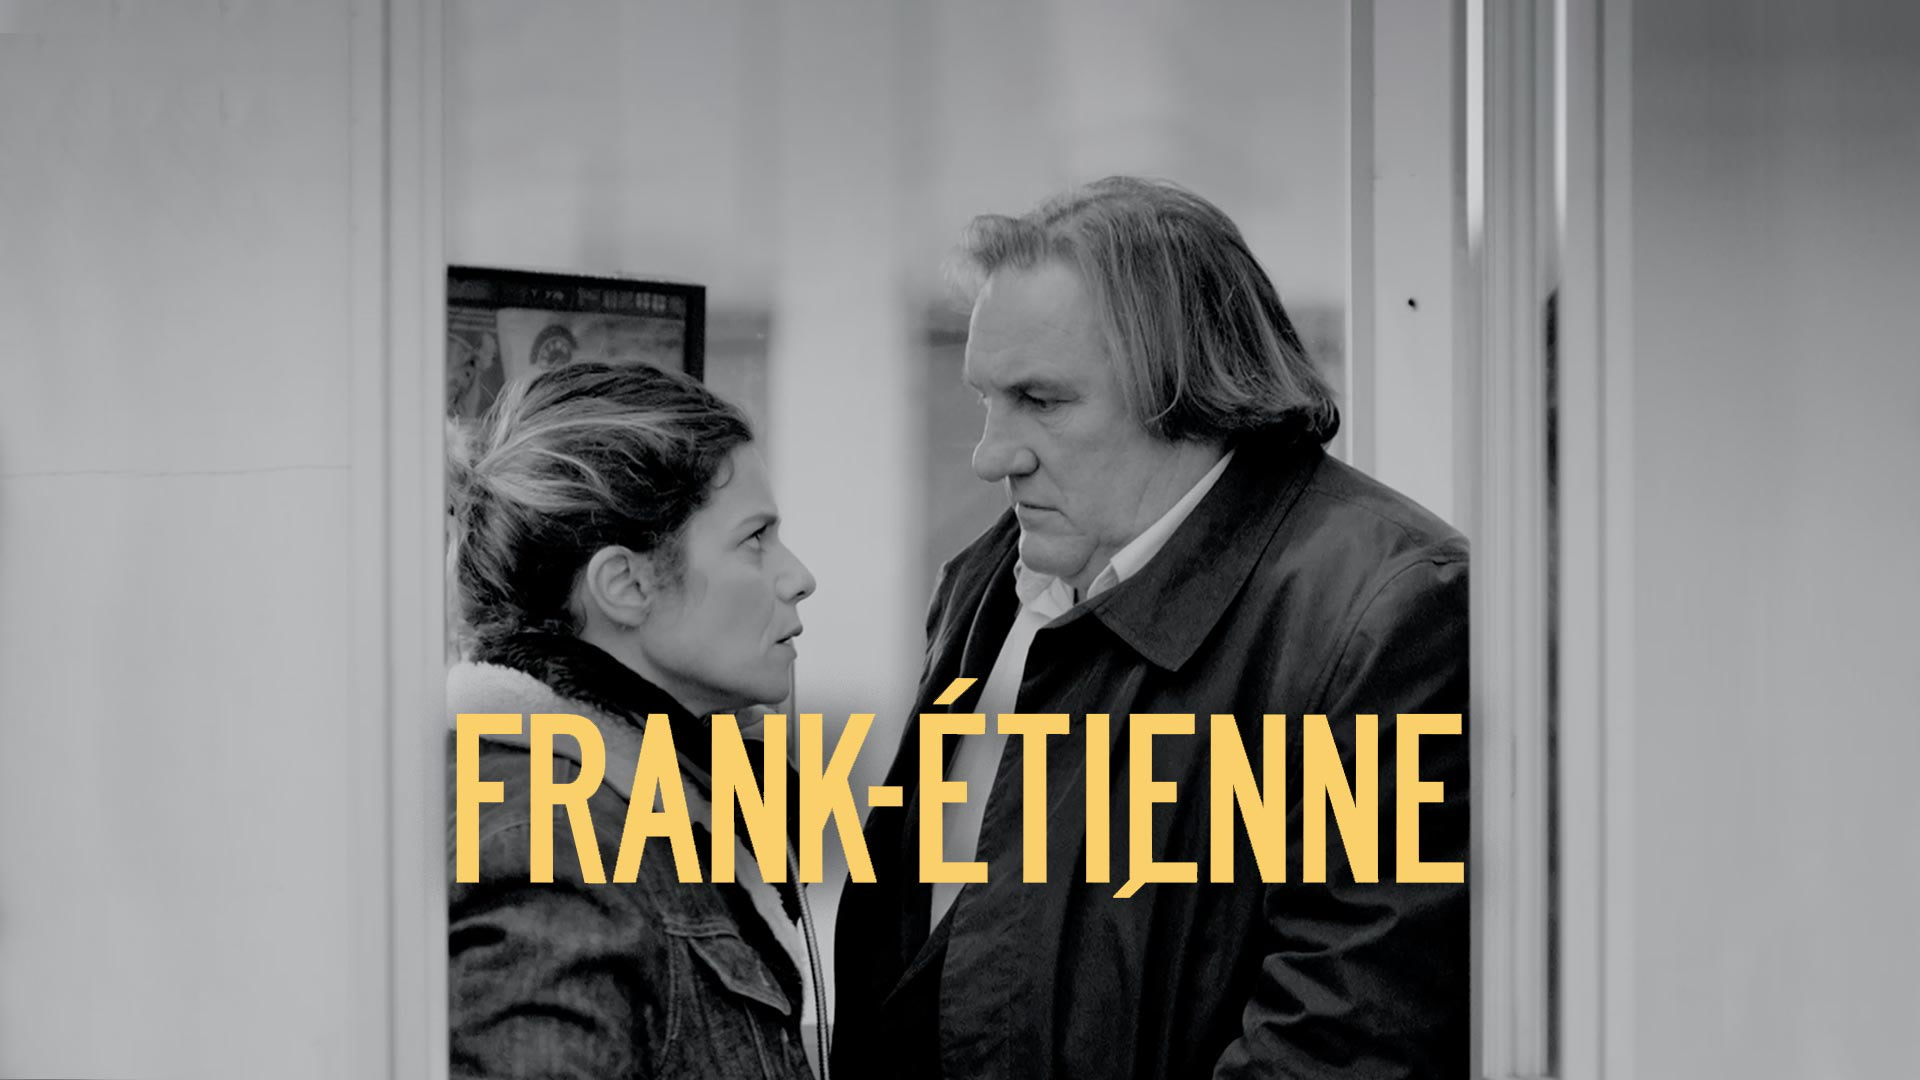 Frank-Etienne Towards Grace